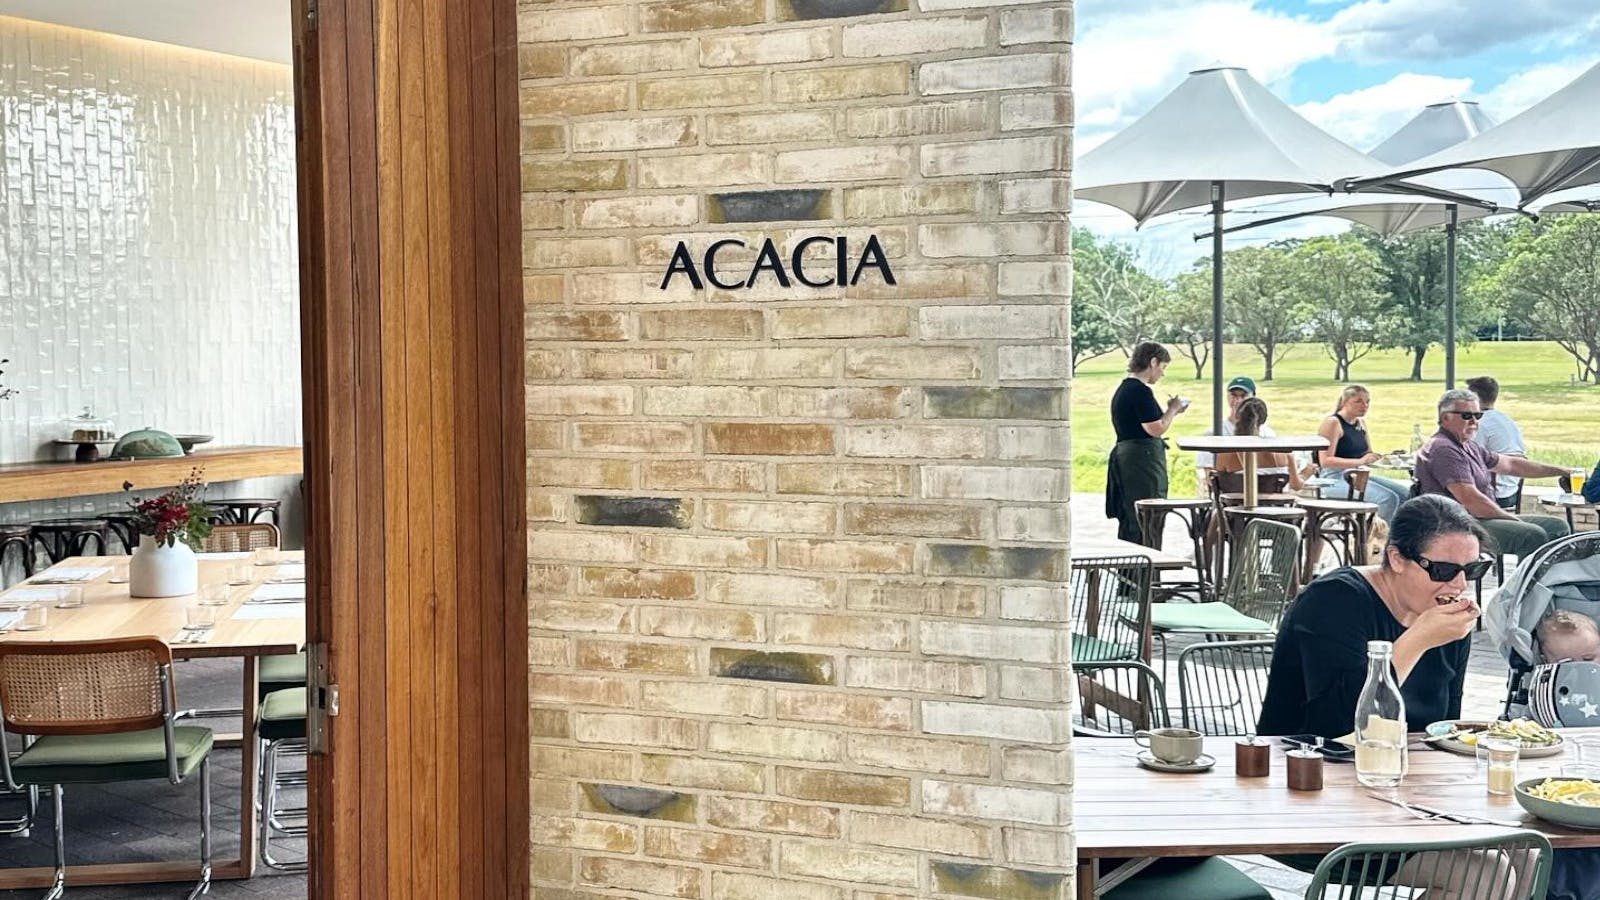 Acacia Dining